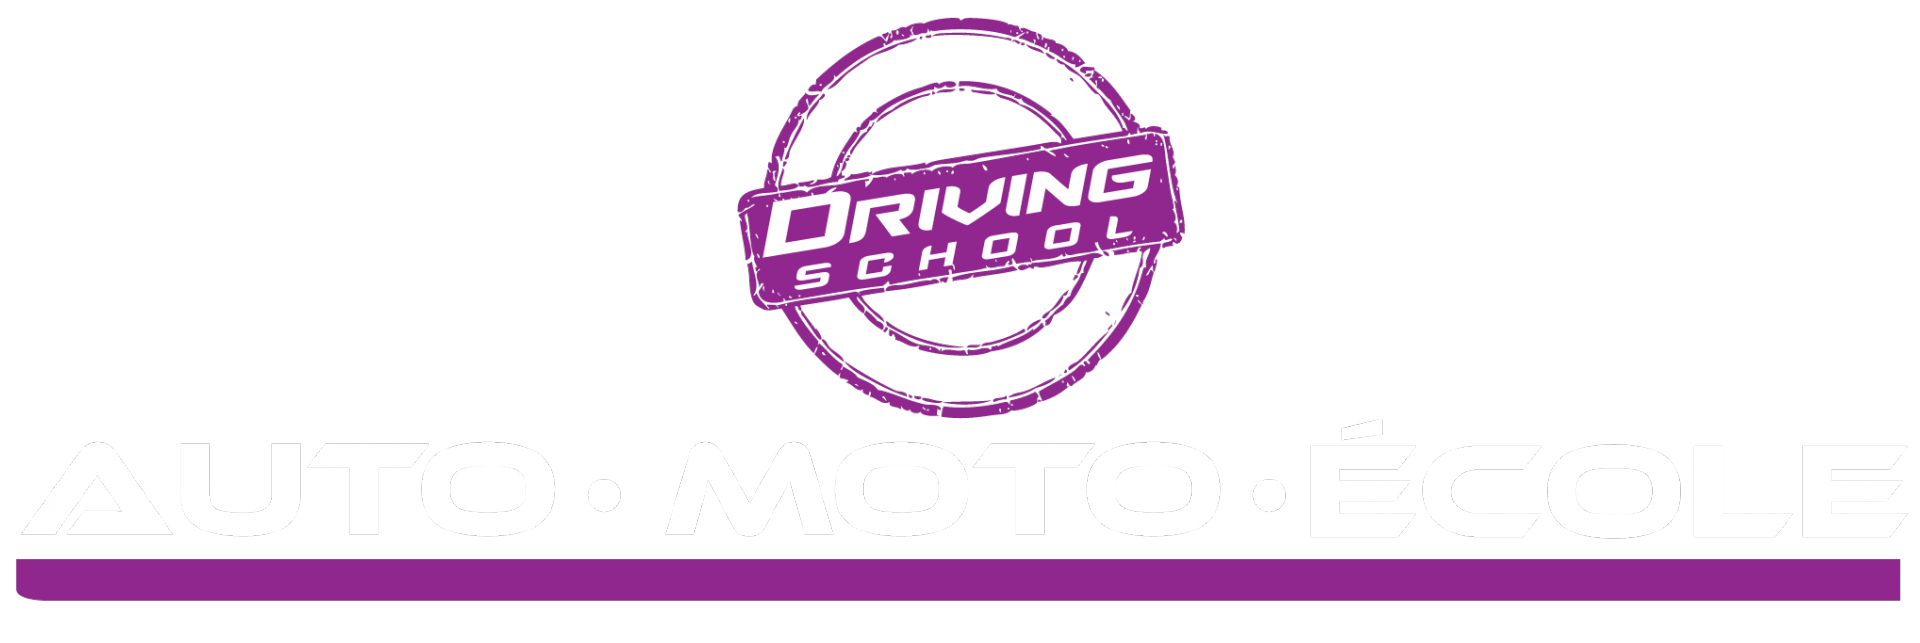 Ecole Auto Moto - Paris 12 - AS FORMATION